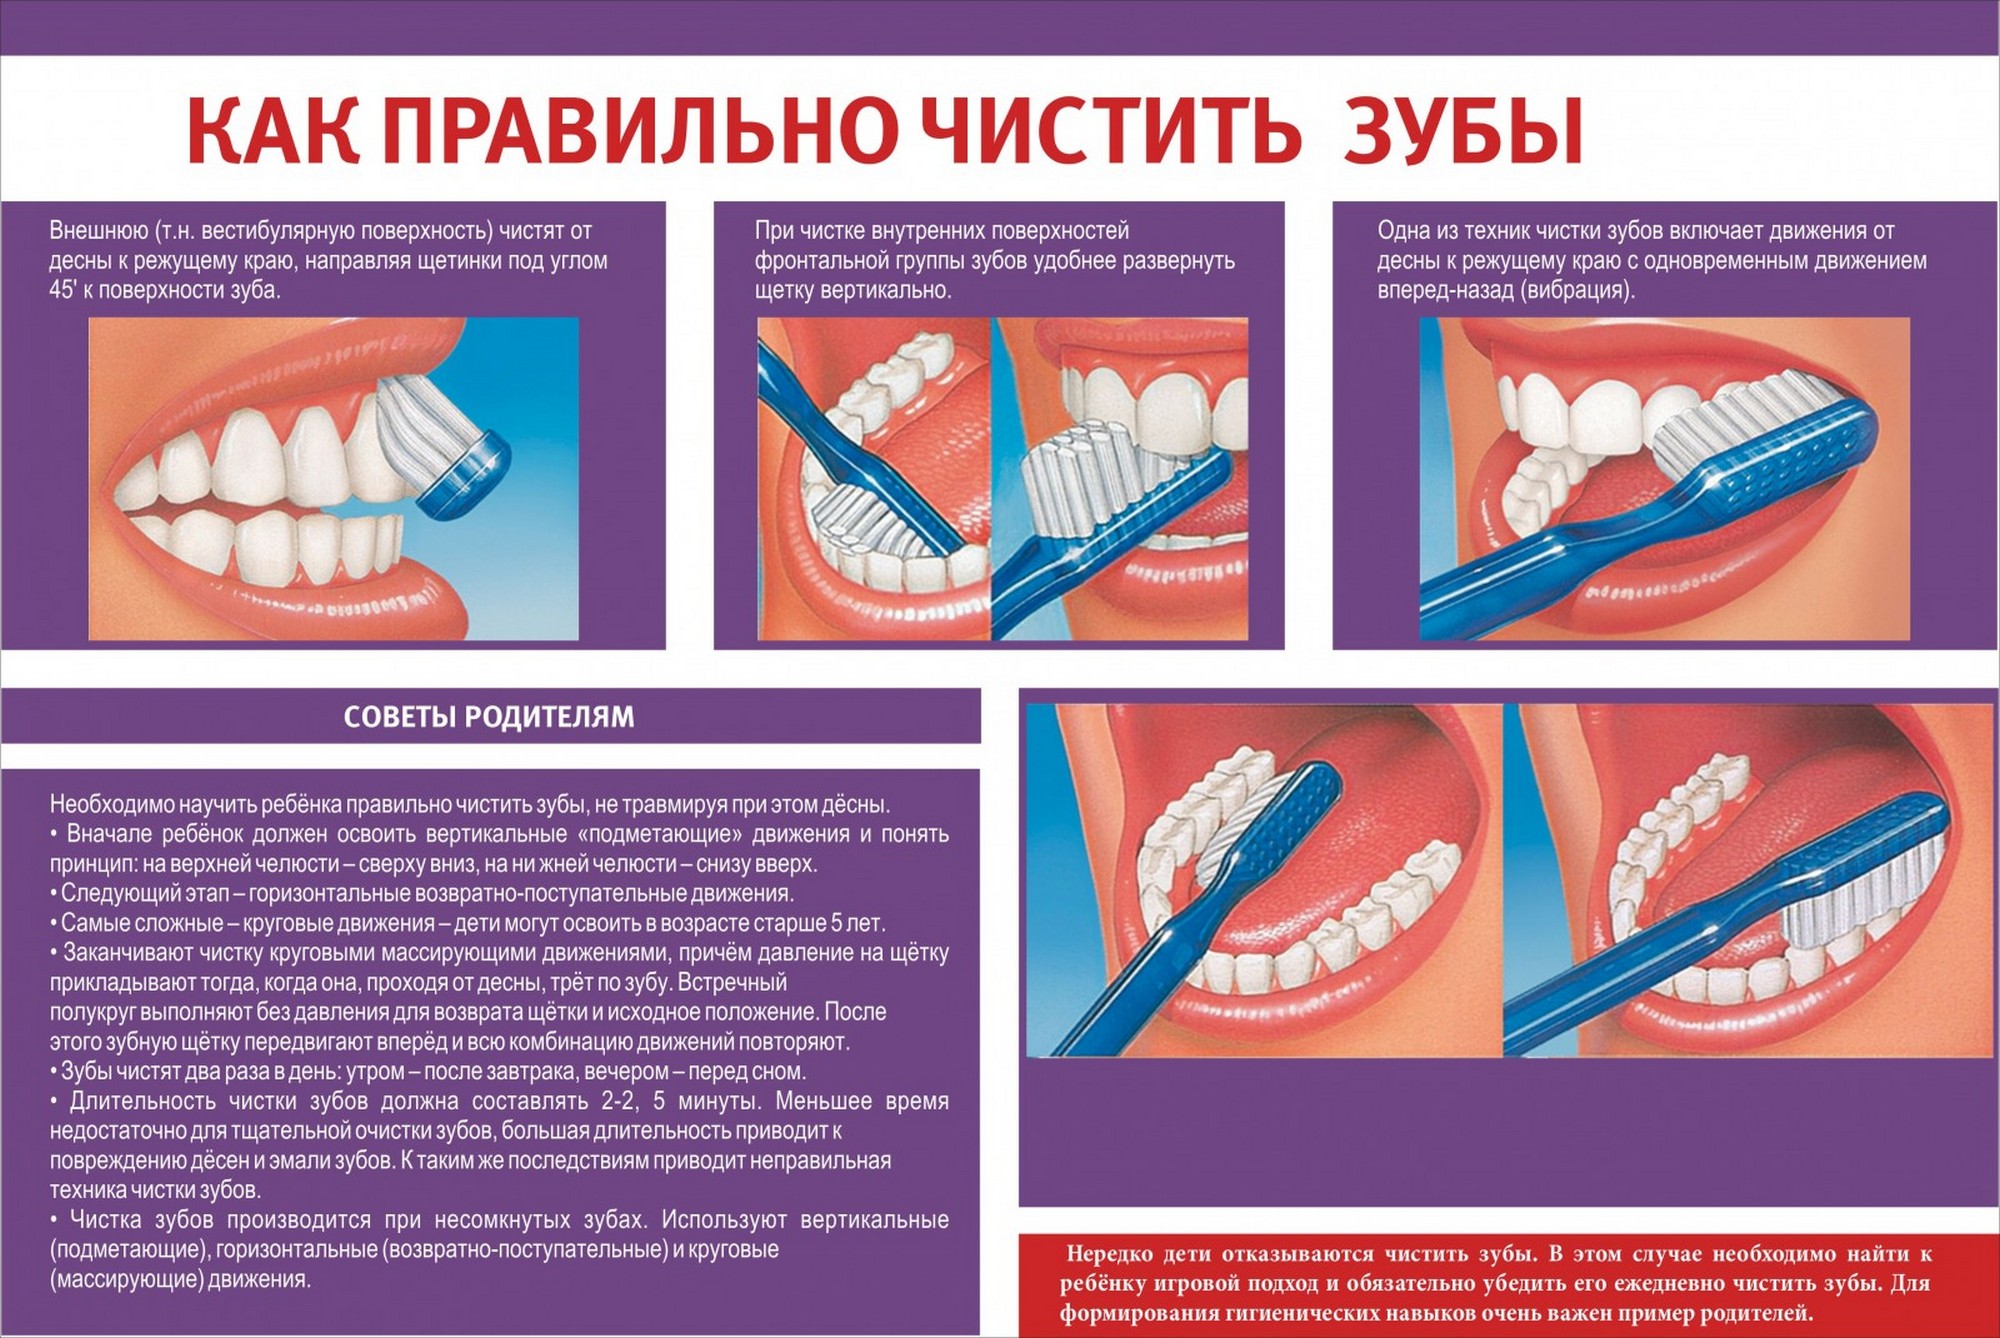 Меры профилактики сохранения зубов. Как правильно чистить зубы. Памятка чистки зубов. Стенд стоматология. Памятка о правильной чистке зубов.